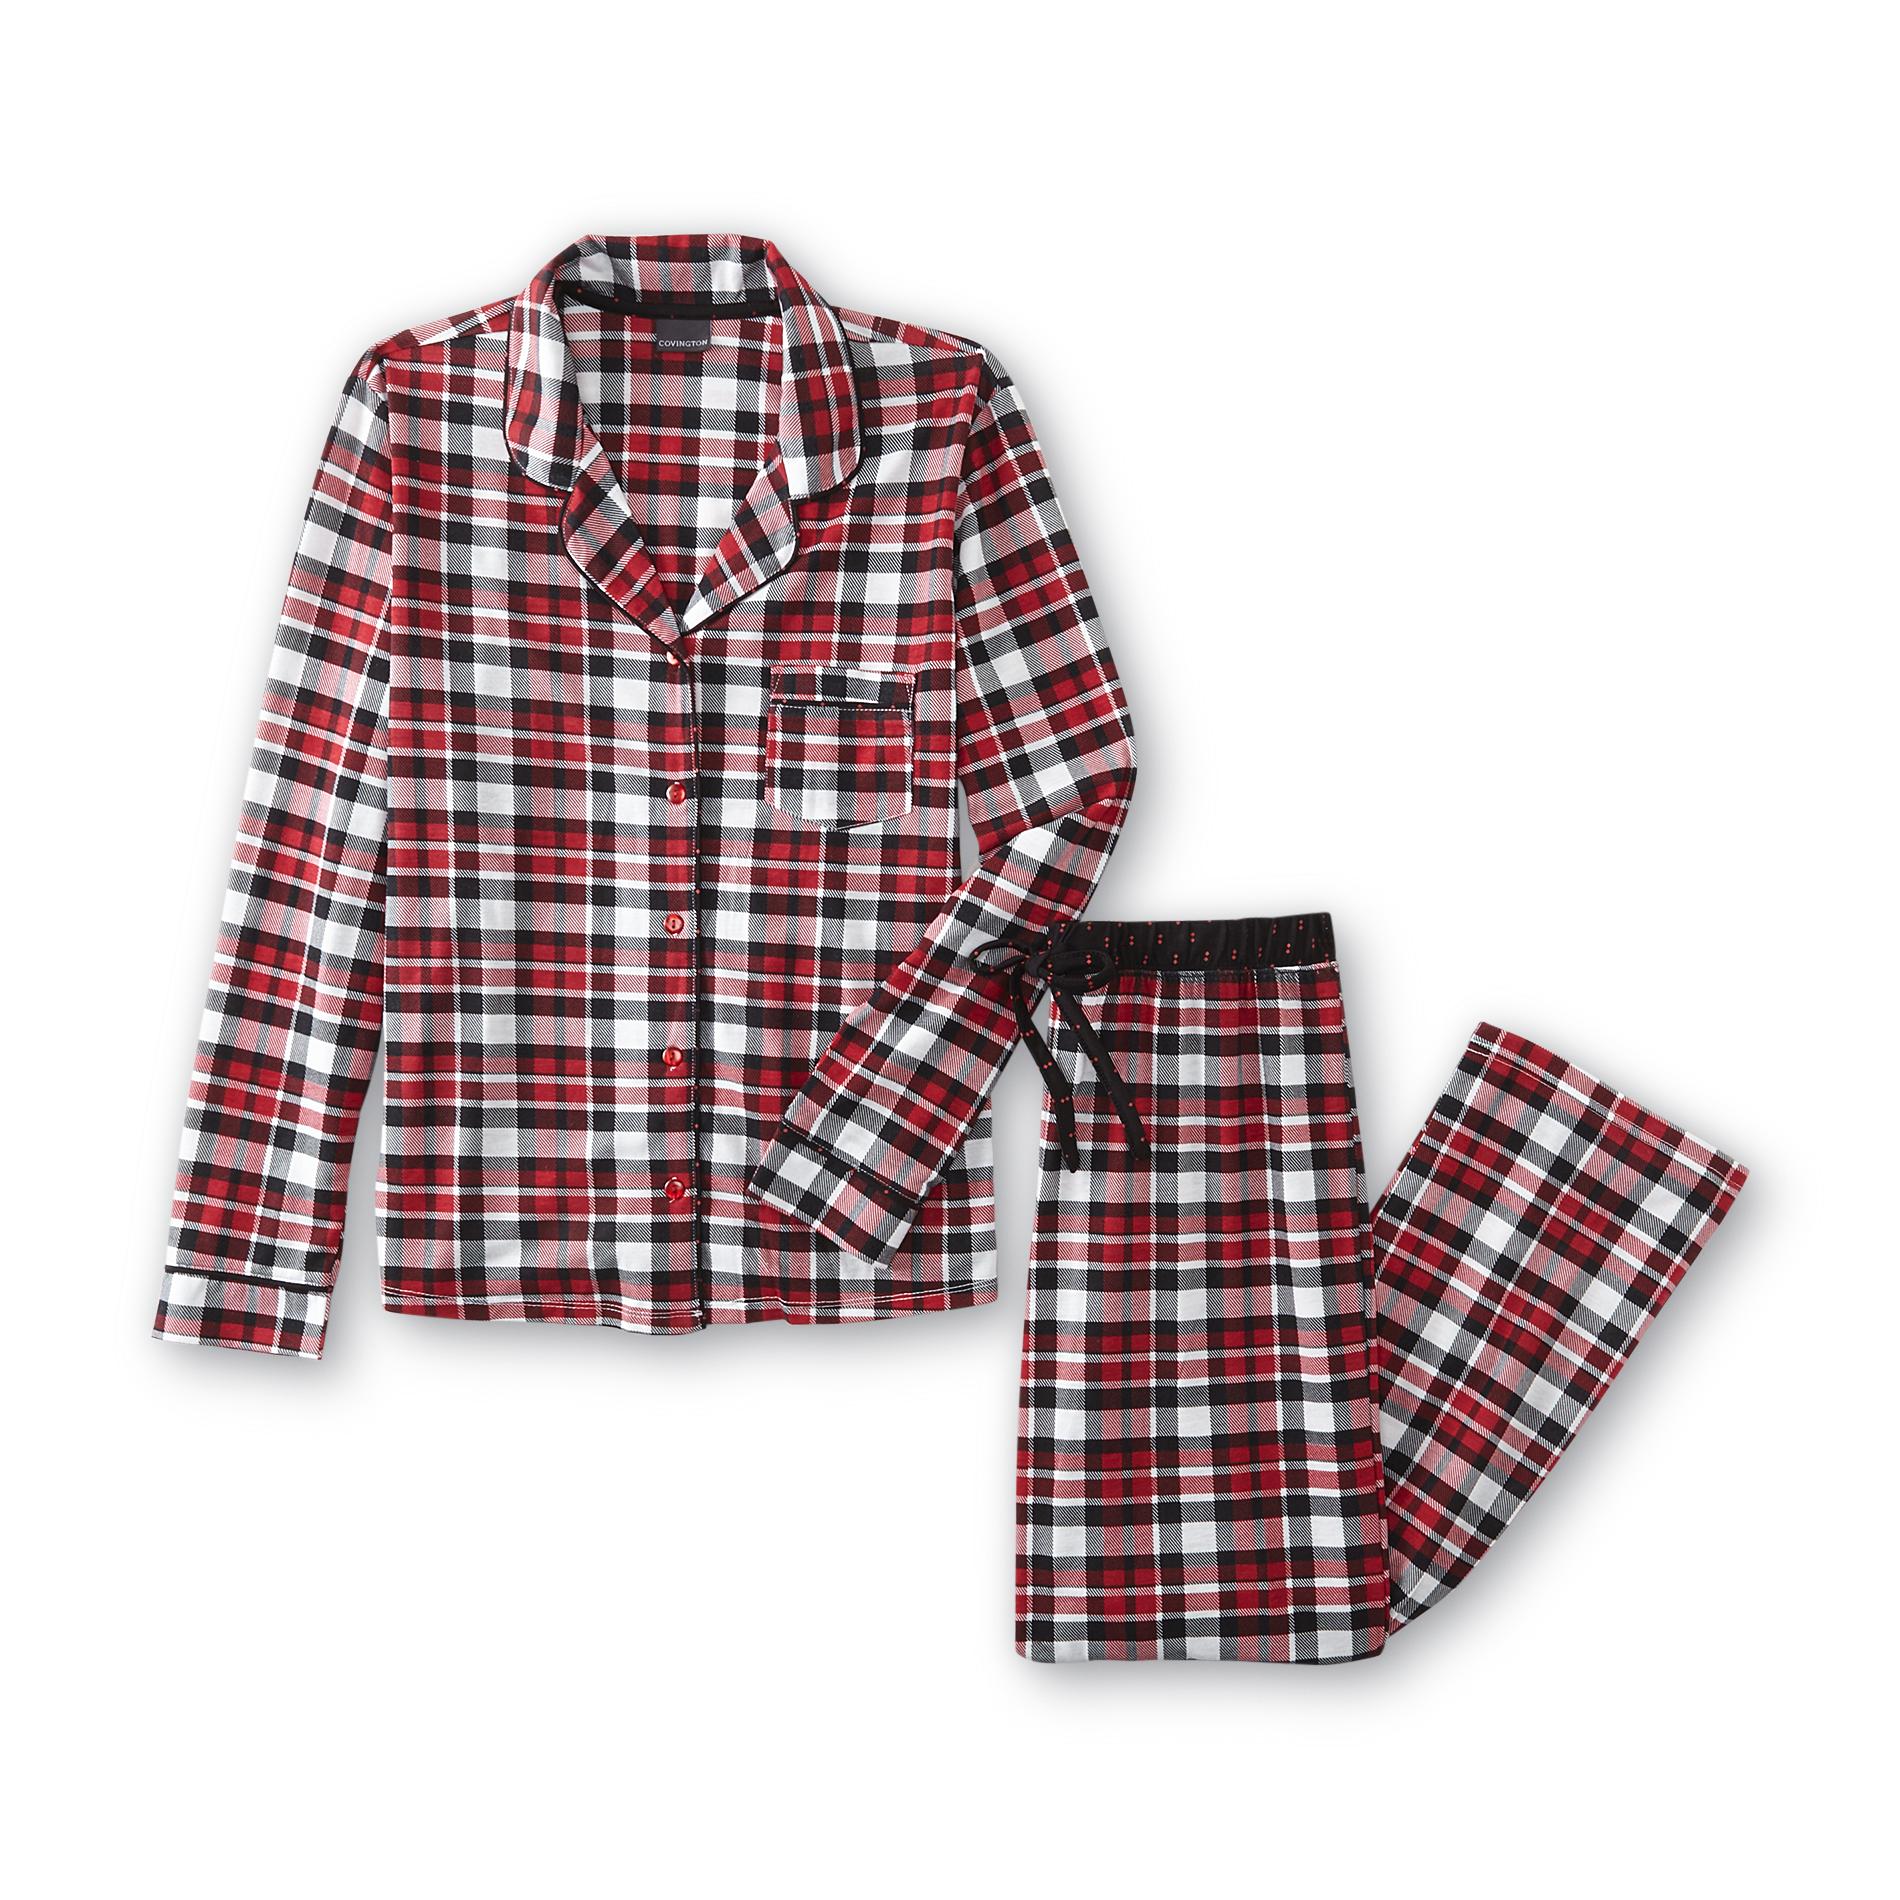 Covington Women's Pajama Top & Pajama Pants - Plaid